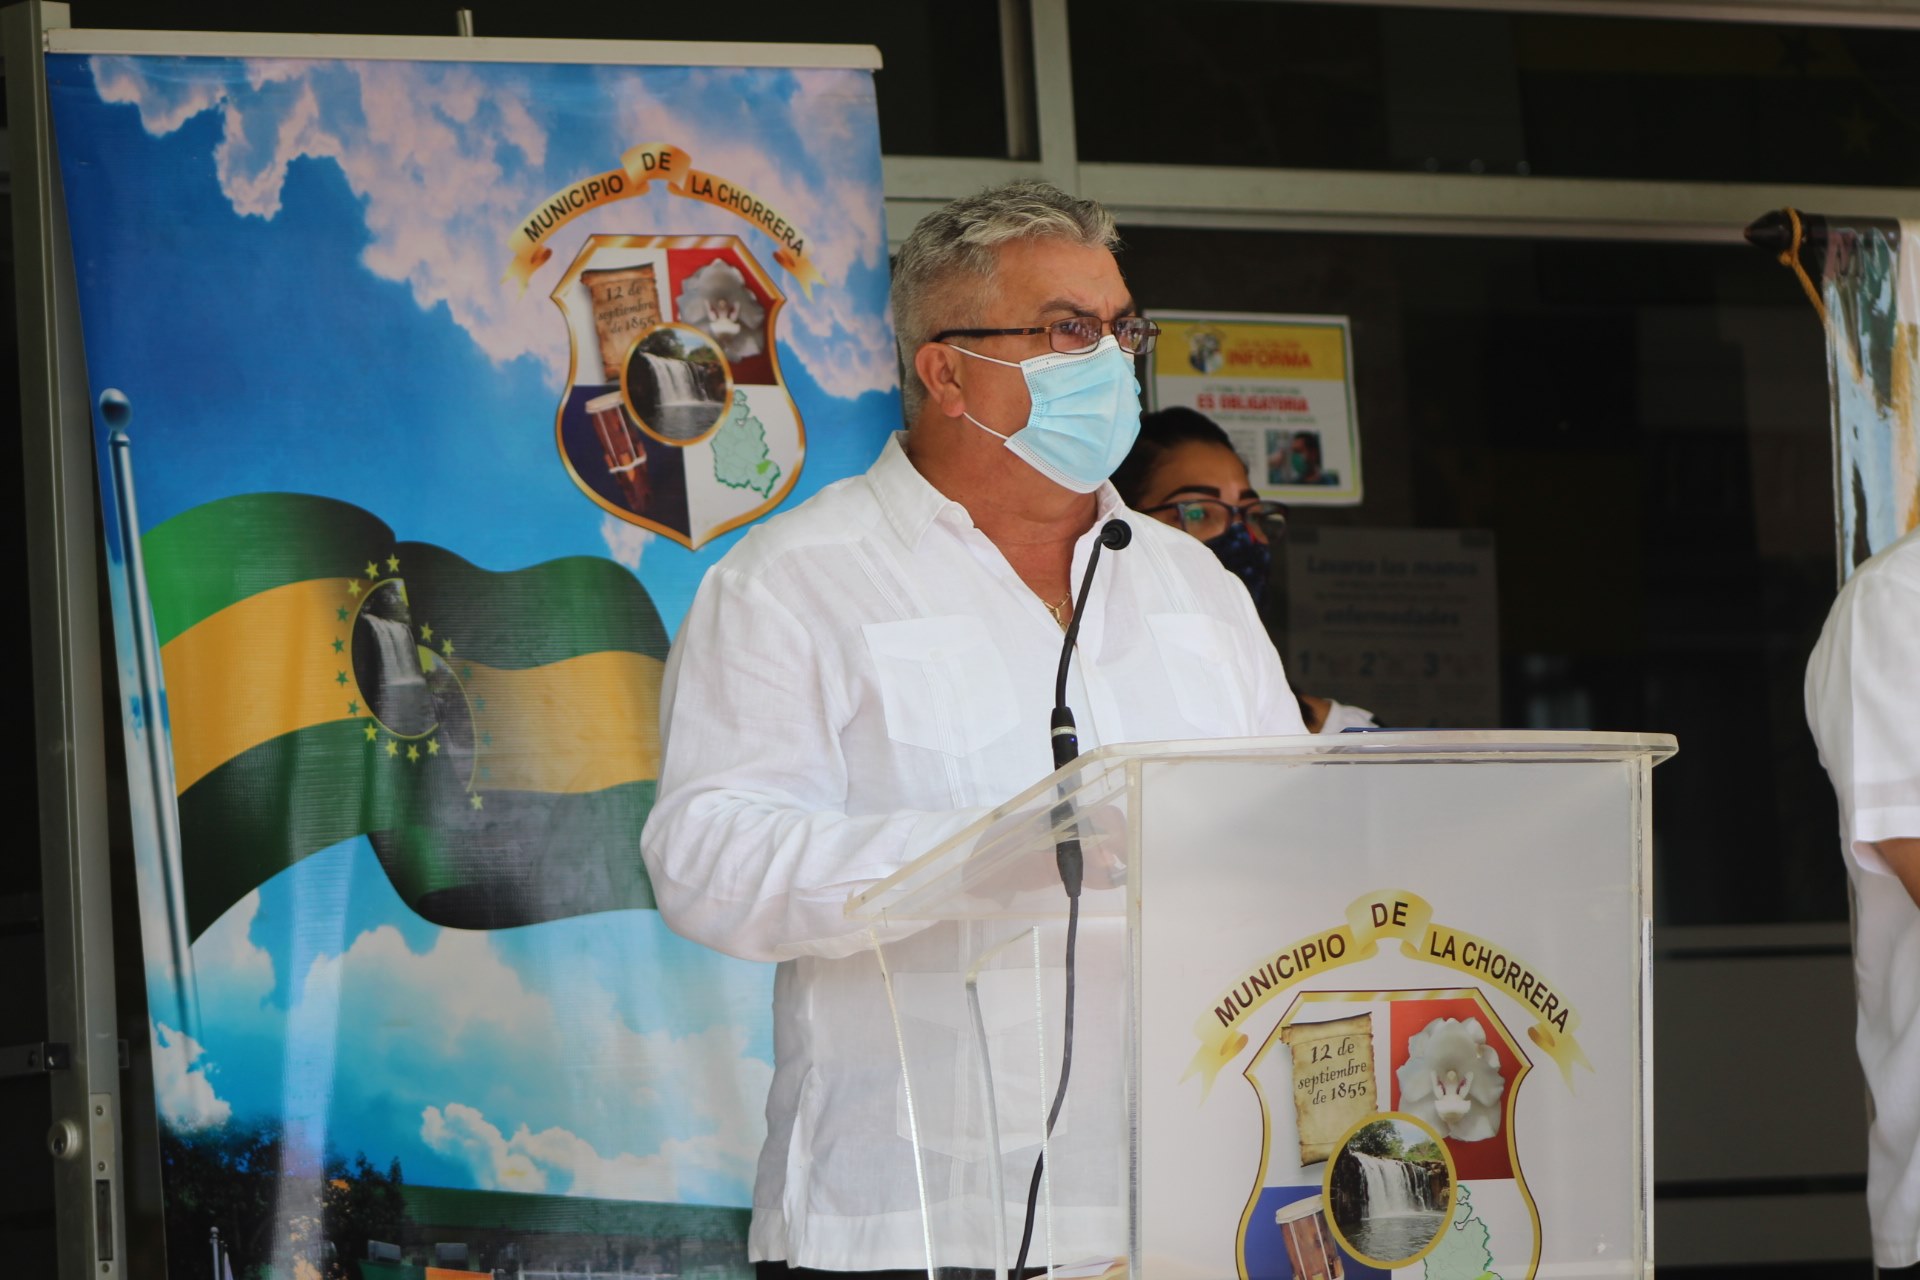 El alcalde, Tomás Velásquez Correa, dijo que se trata de una celebración sin precedentes, por el impacto y alcance de la pandemia.